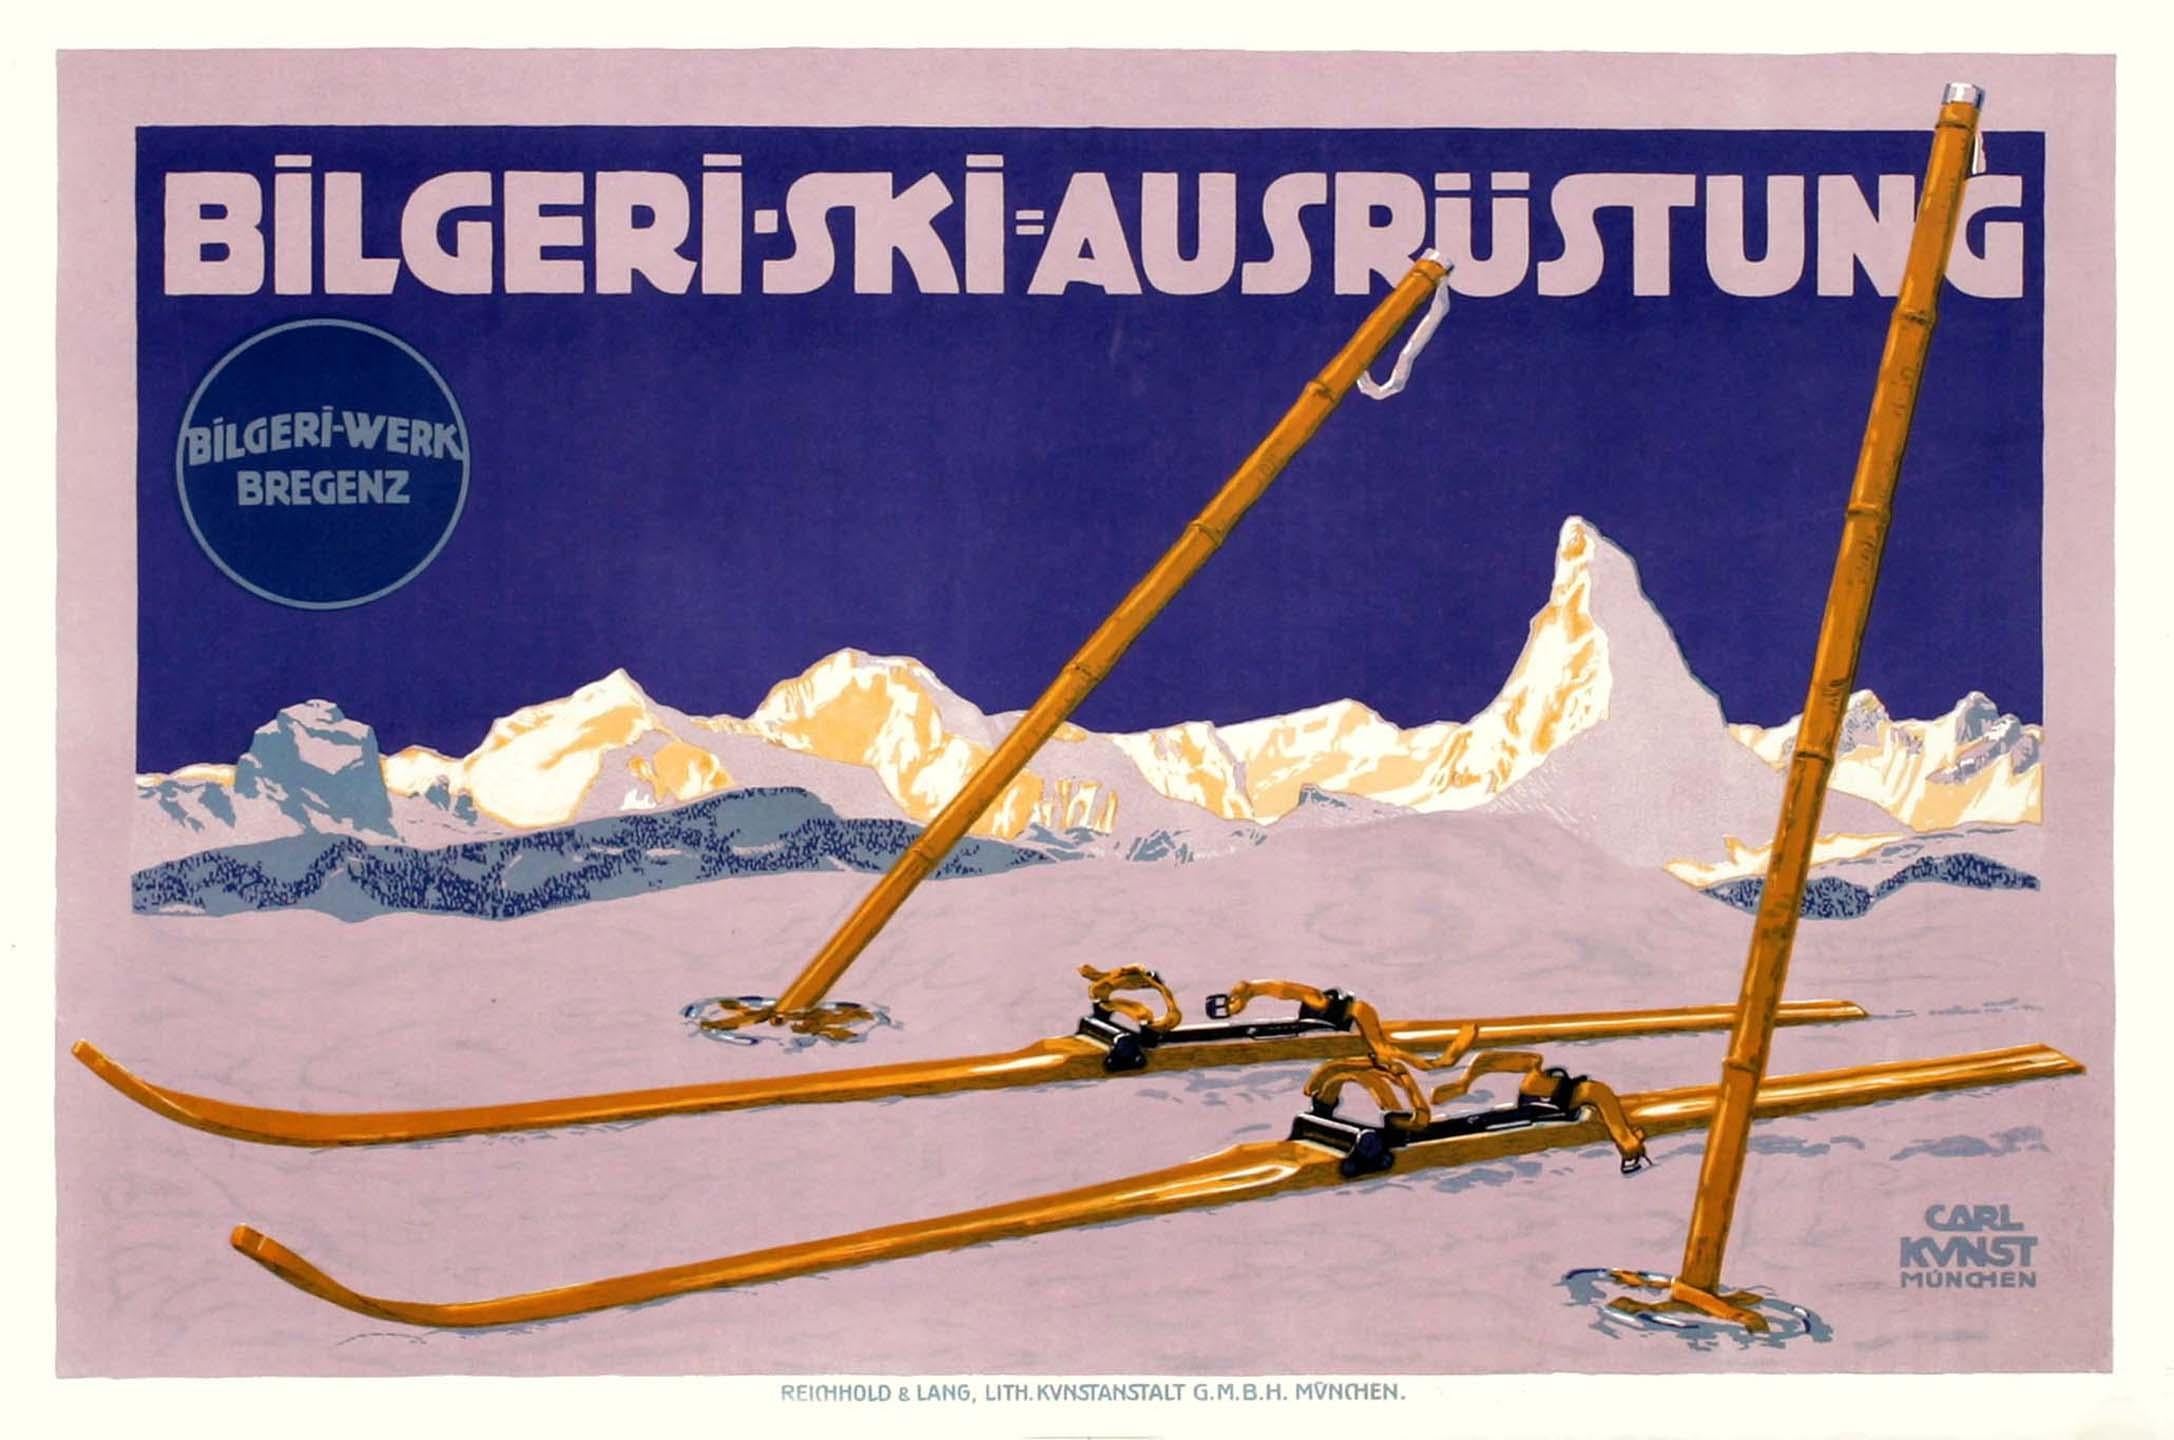 "Bilgeri-Ski" Original Antique Ski Poster - Print by Carl Kunst